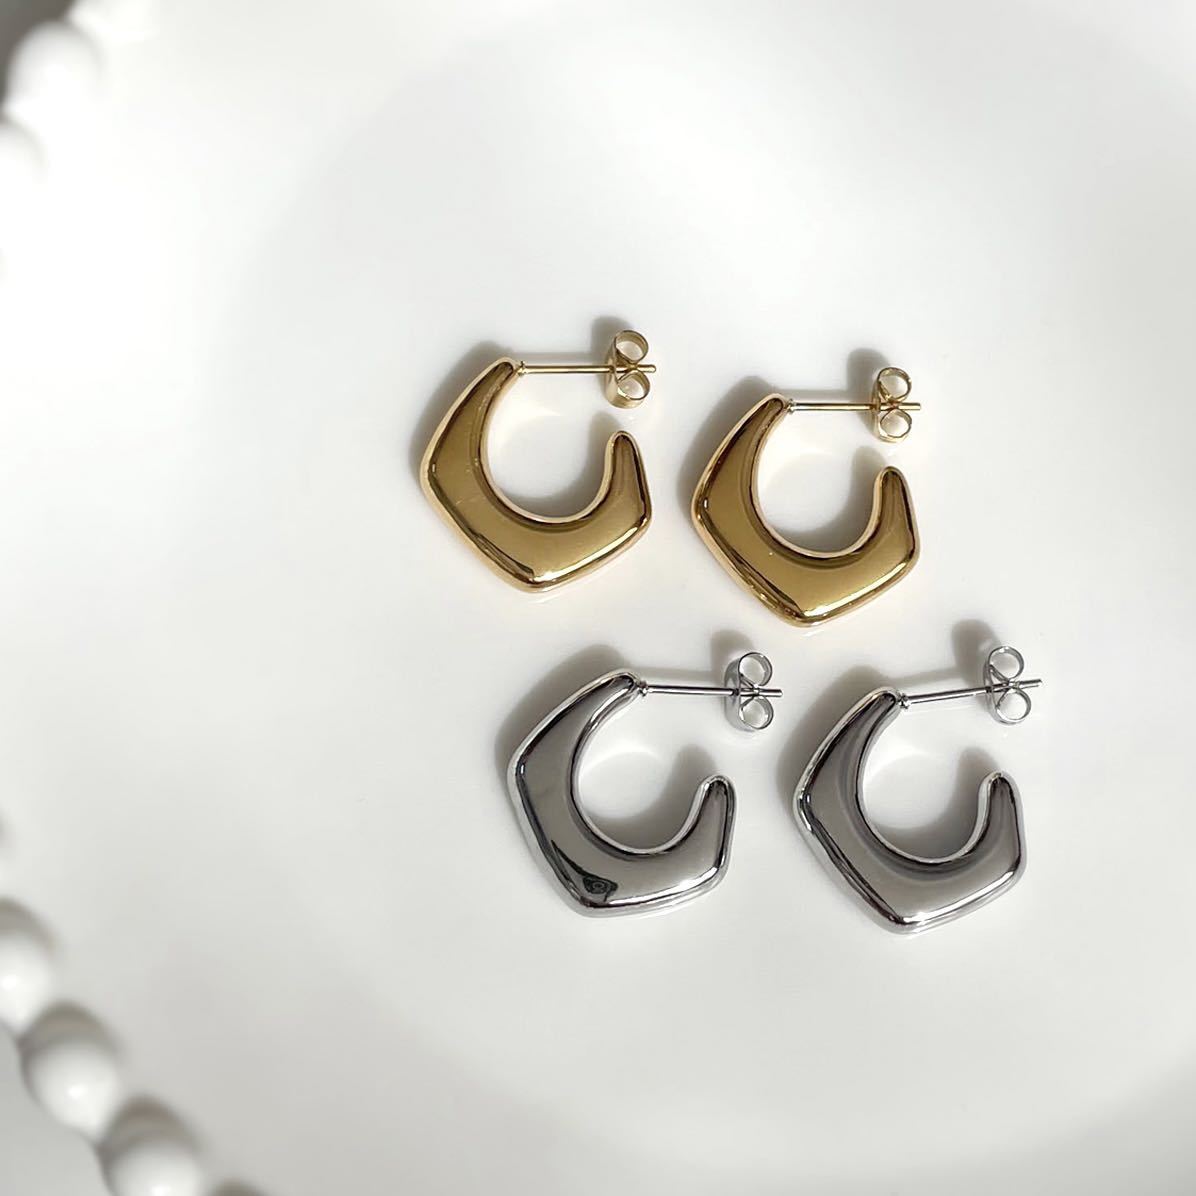  stainless steel Ran bus earrings | silver 